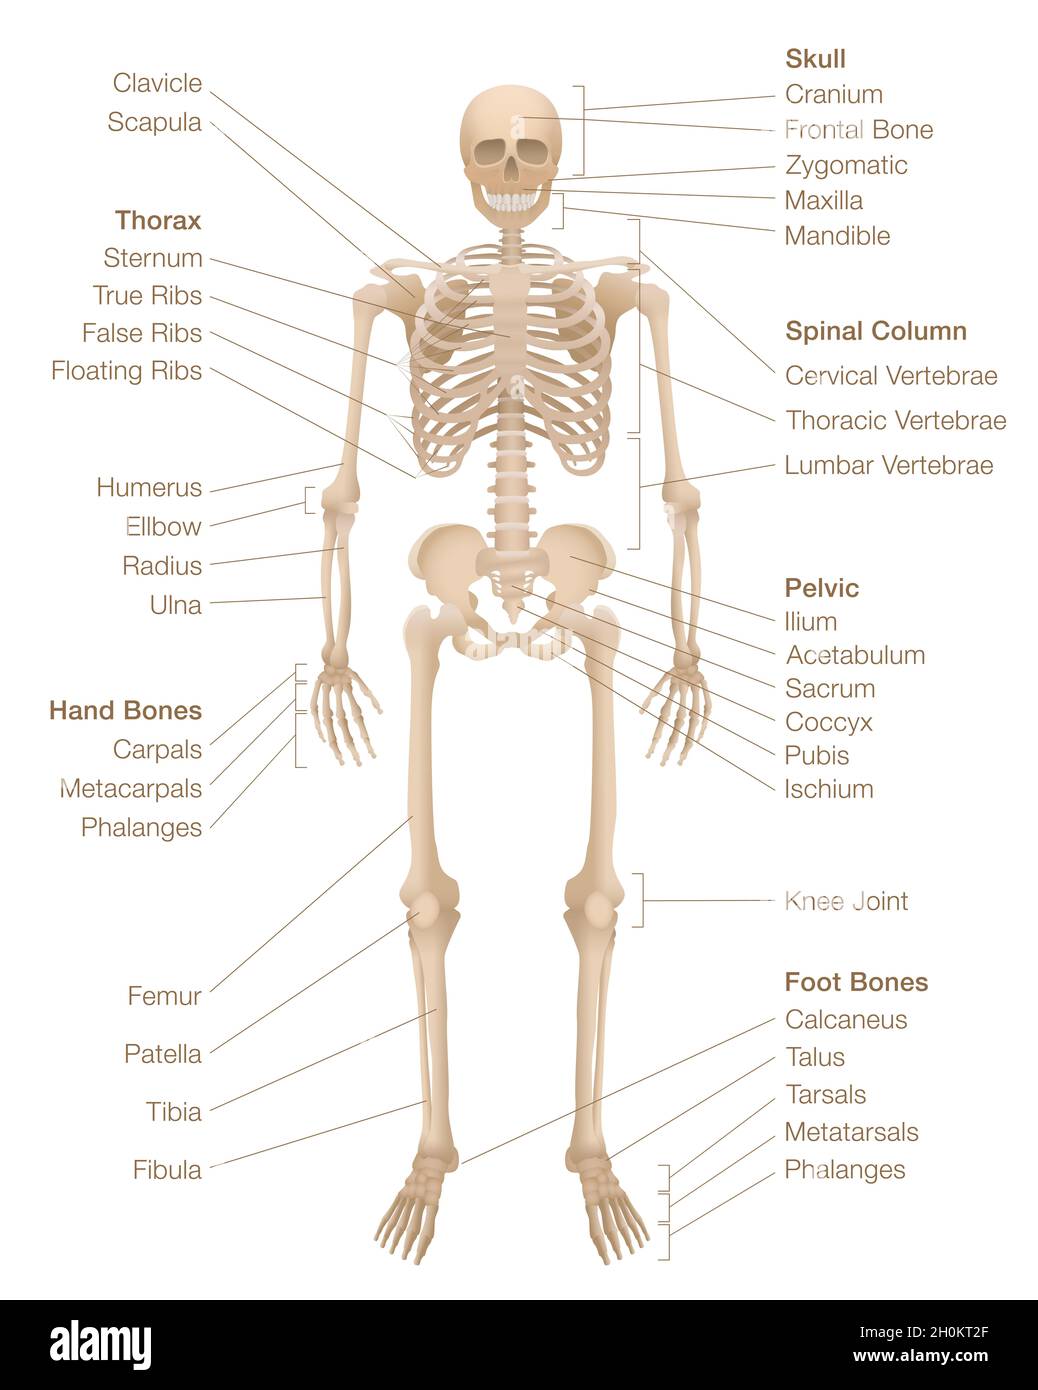 Horoskop für menschliche Skelette. Beschriftetes Skelettsystem mit benannten Knochen, Schädel, Wirbelsäule, Becken, Thorax, Rippen, Brustbein, Hand- und Fußknochen, Schlüsselbein. Stockfoto